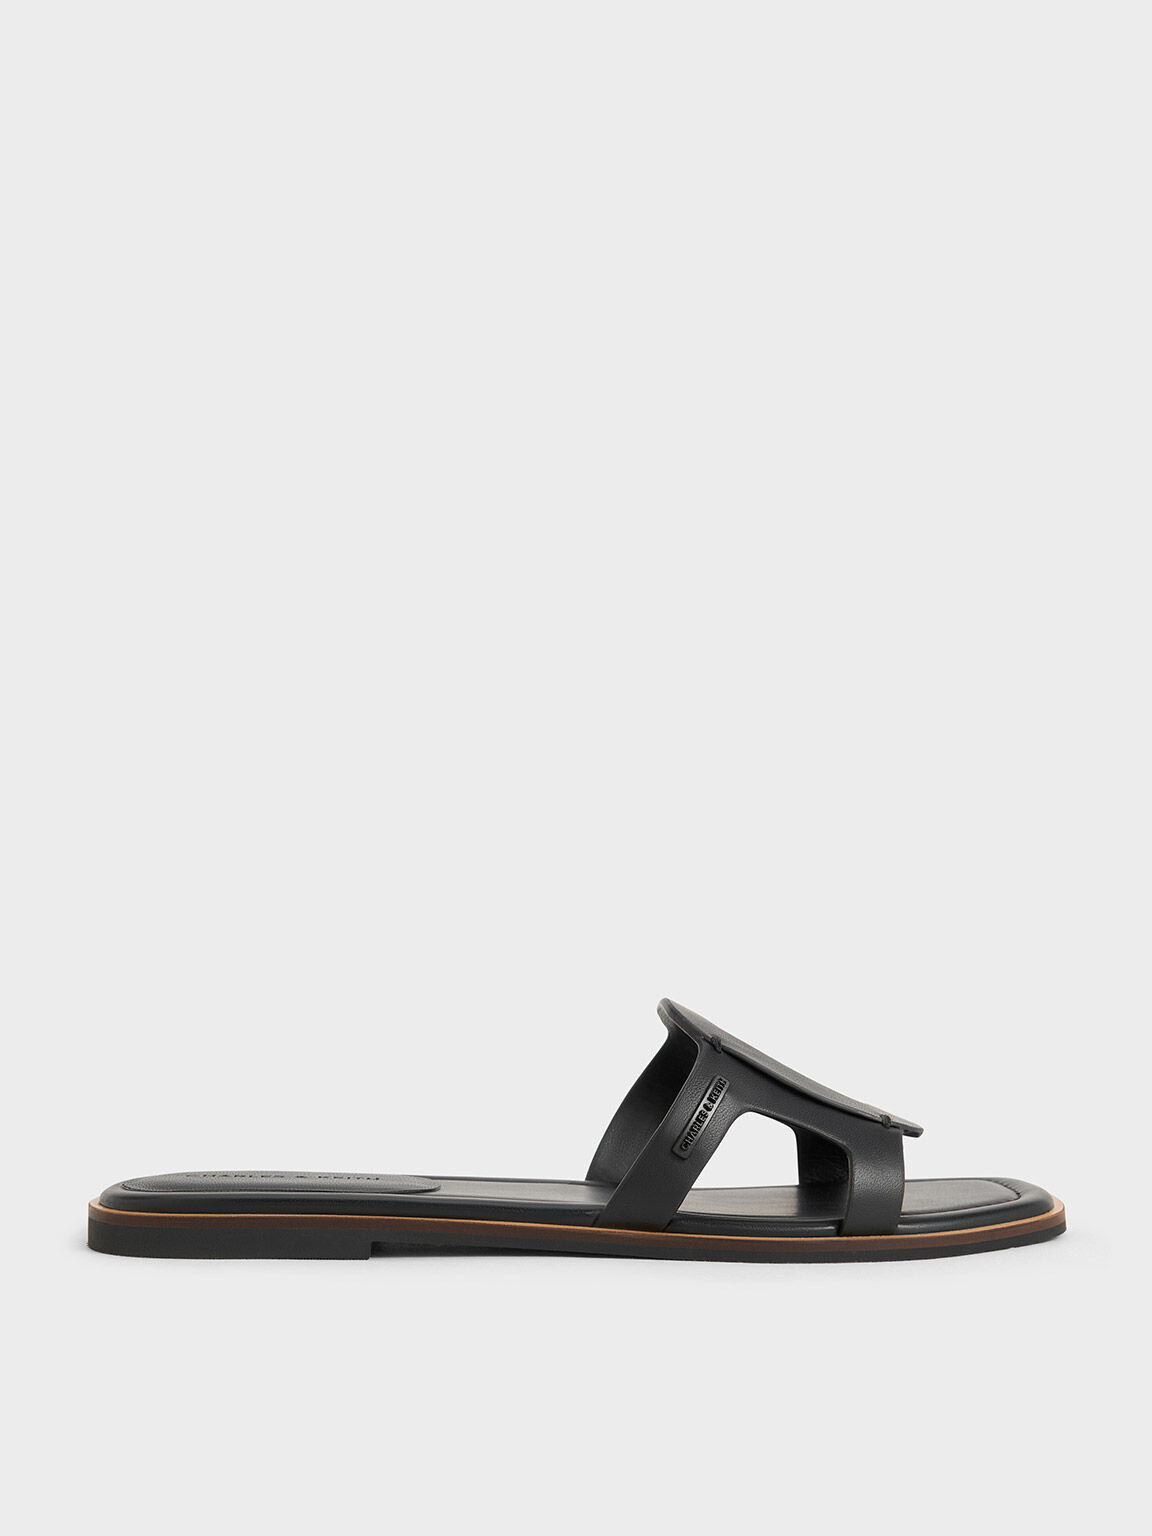 Easley Cut-Out Slide Sandals, Black, hi-res